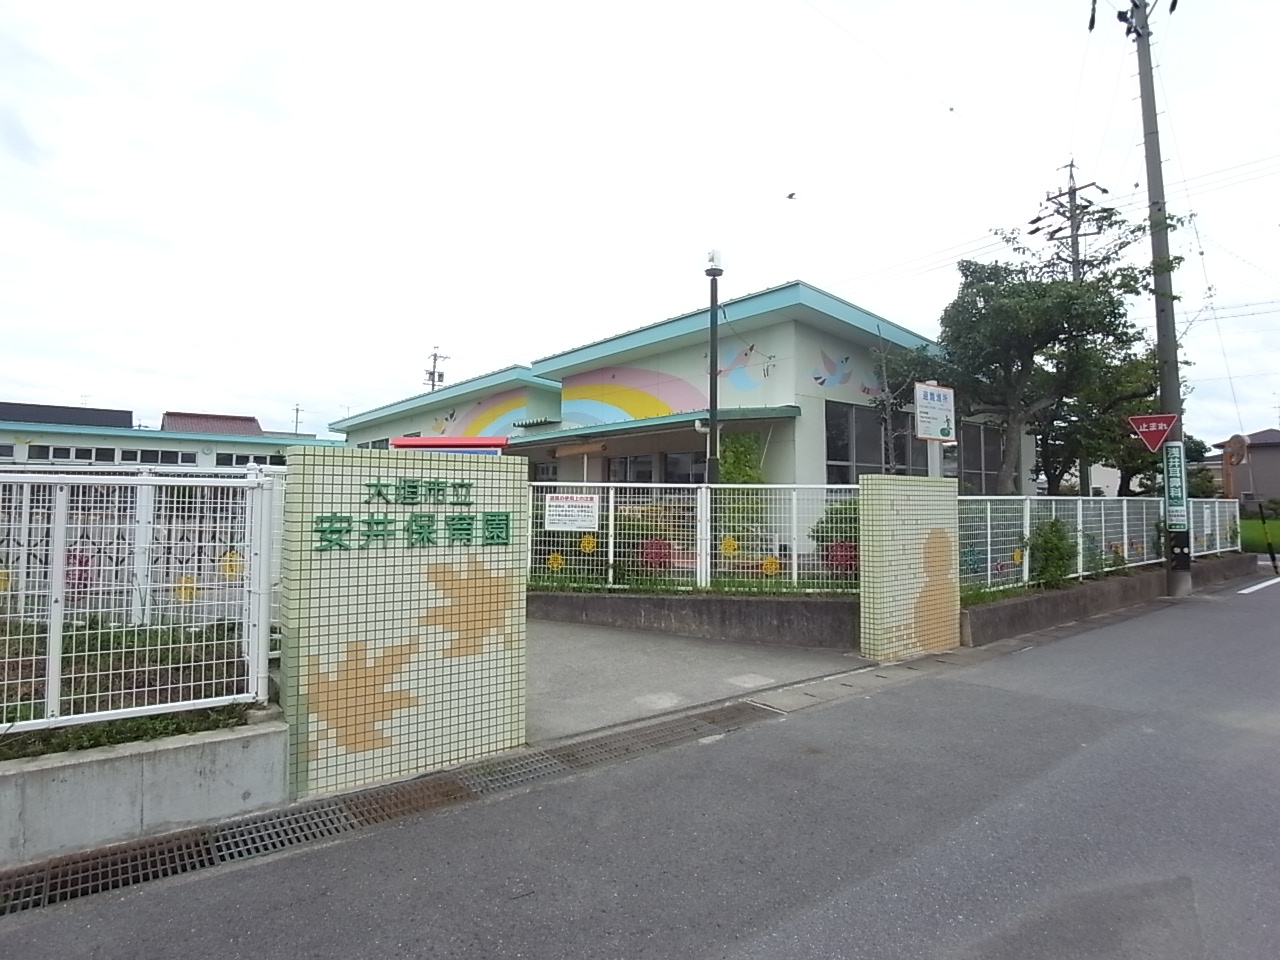 kindergarten ・ Nursery. Yasui nursery school (kindergarten ・ 546m to the nursery)